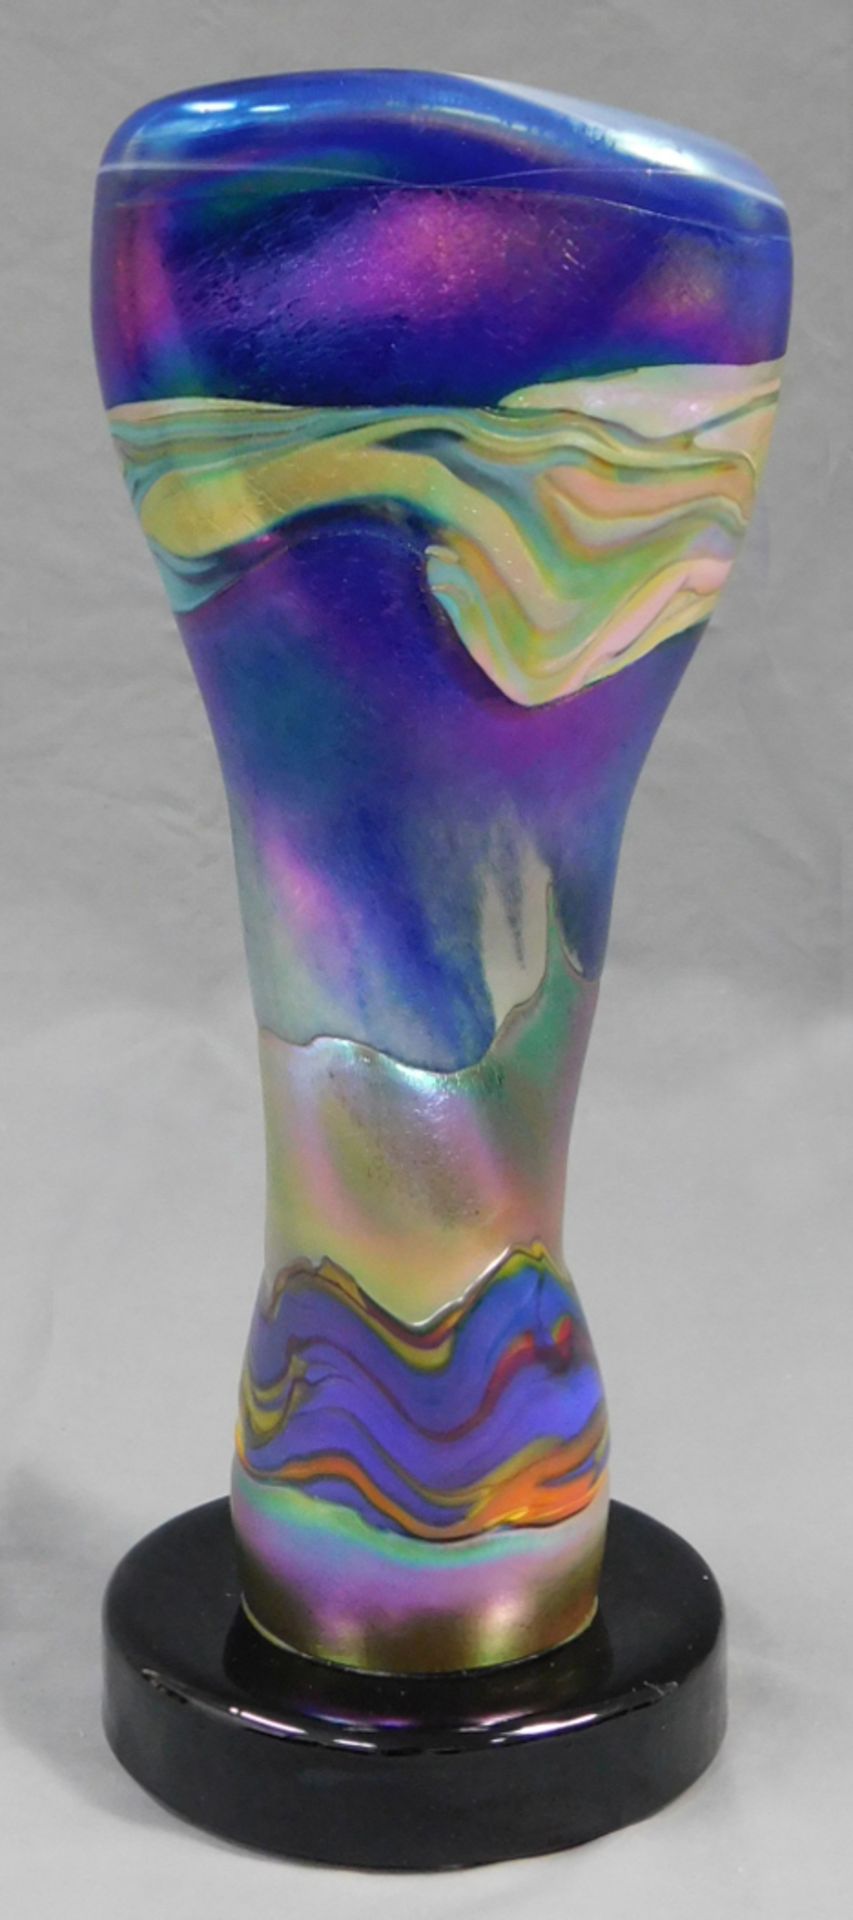 Glasskulptur. Verschiedenfarbige Glasmasse geblasen.